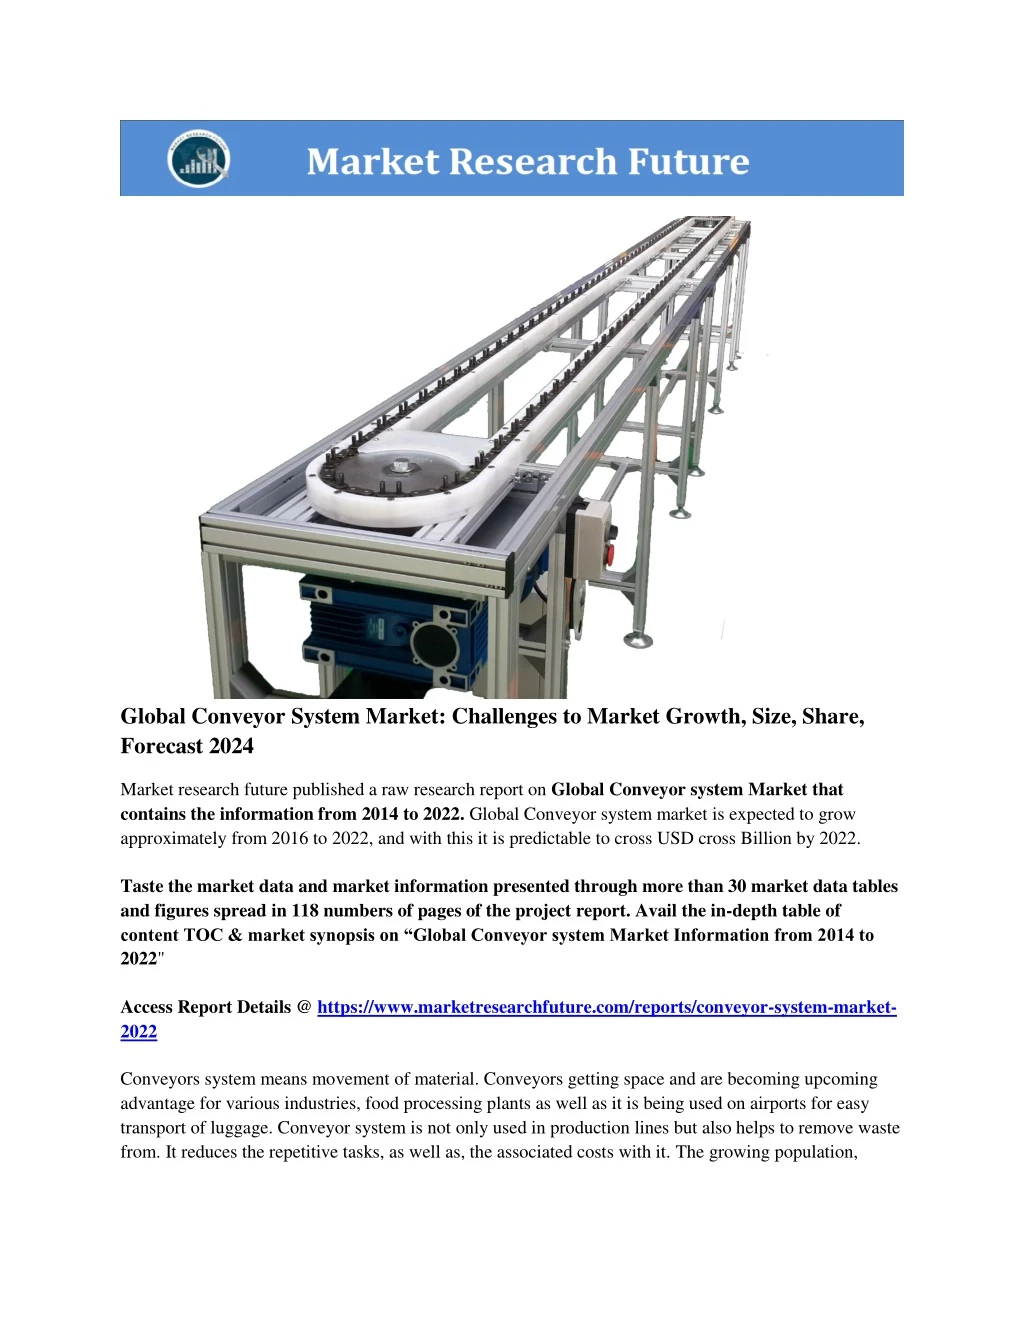 global conveyor system market challenges